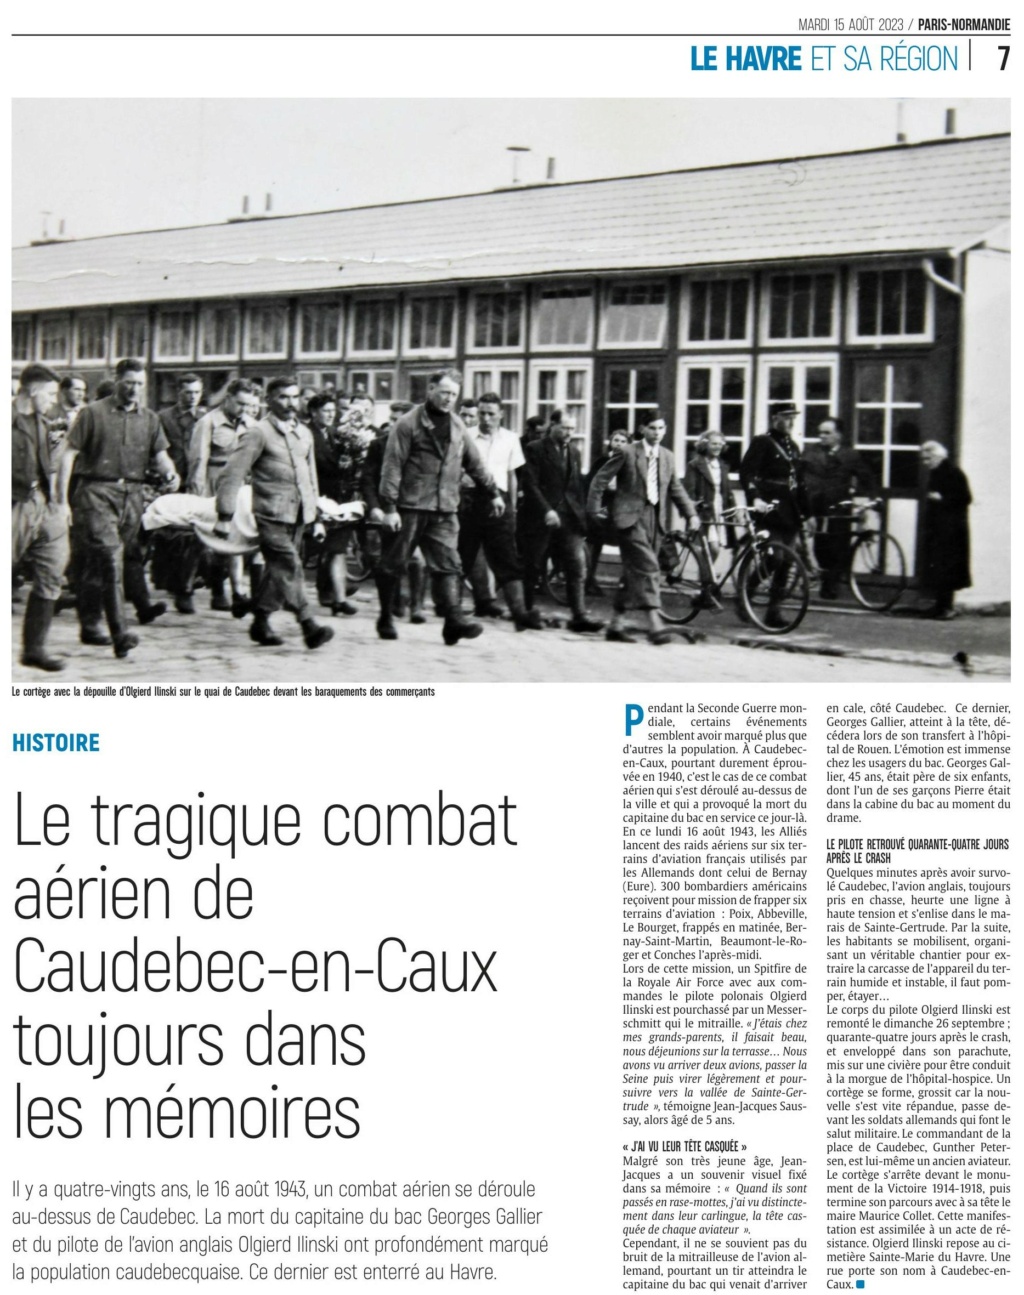 Le tragique combat aérien de Caudebec-en-Caux toujours dans les mémoires 2023-096